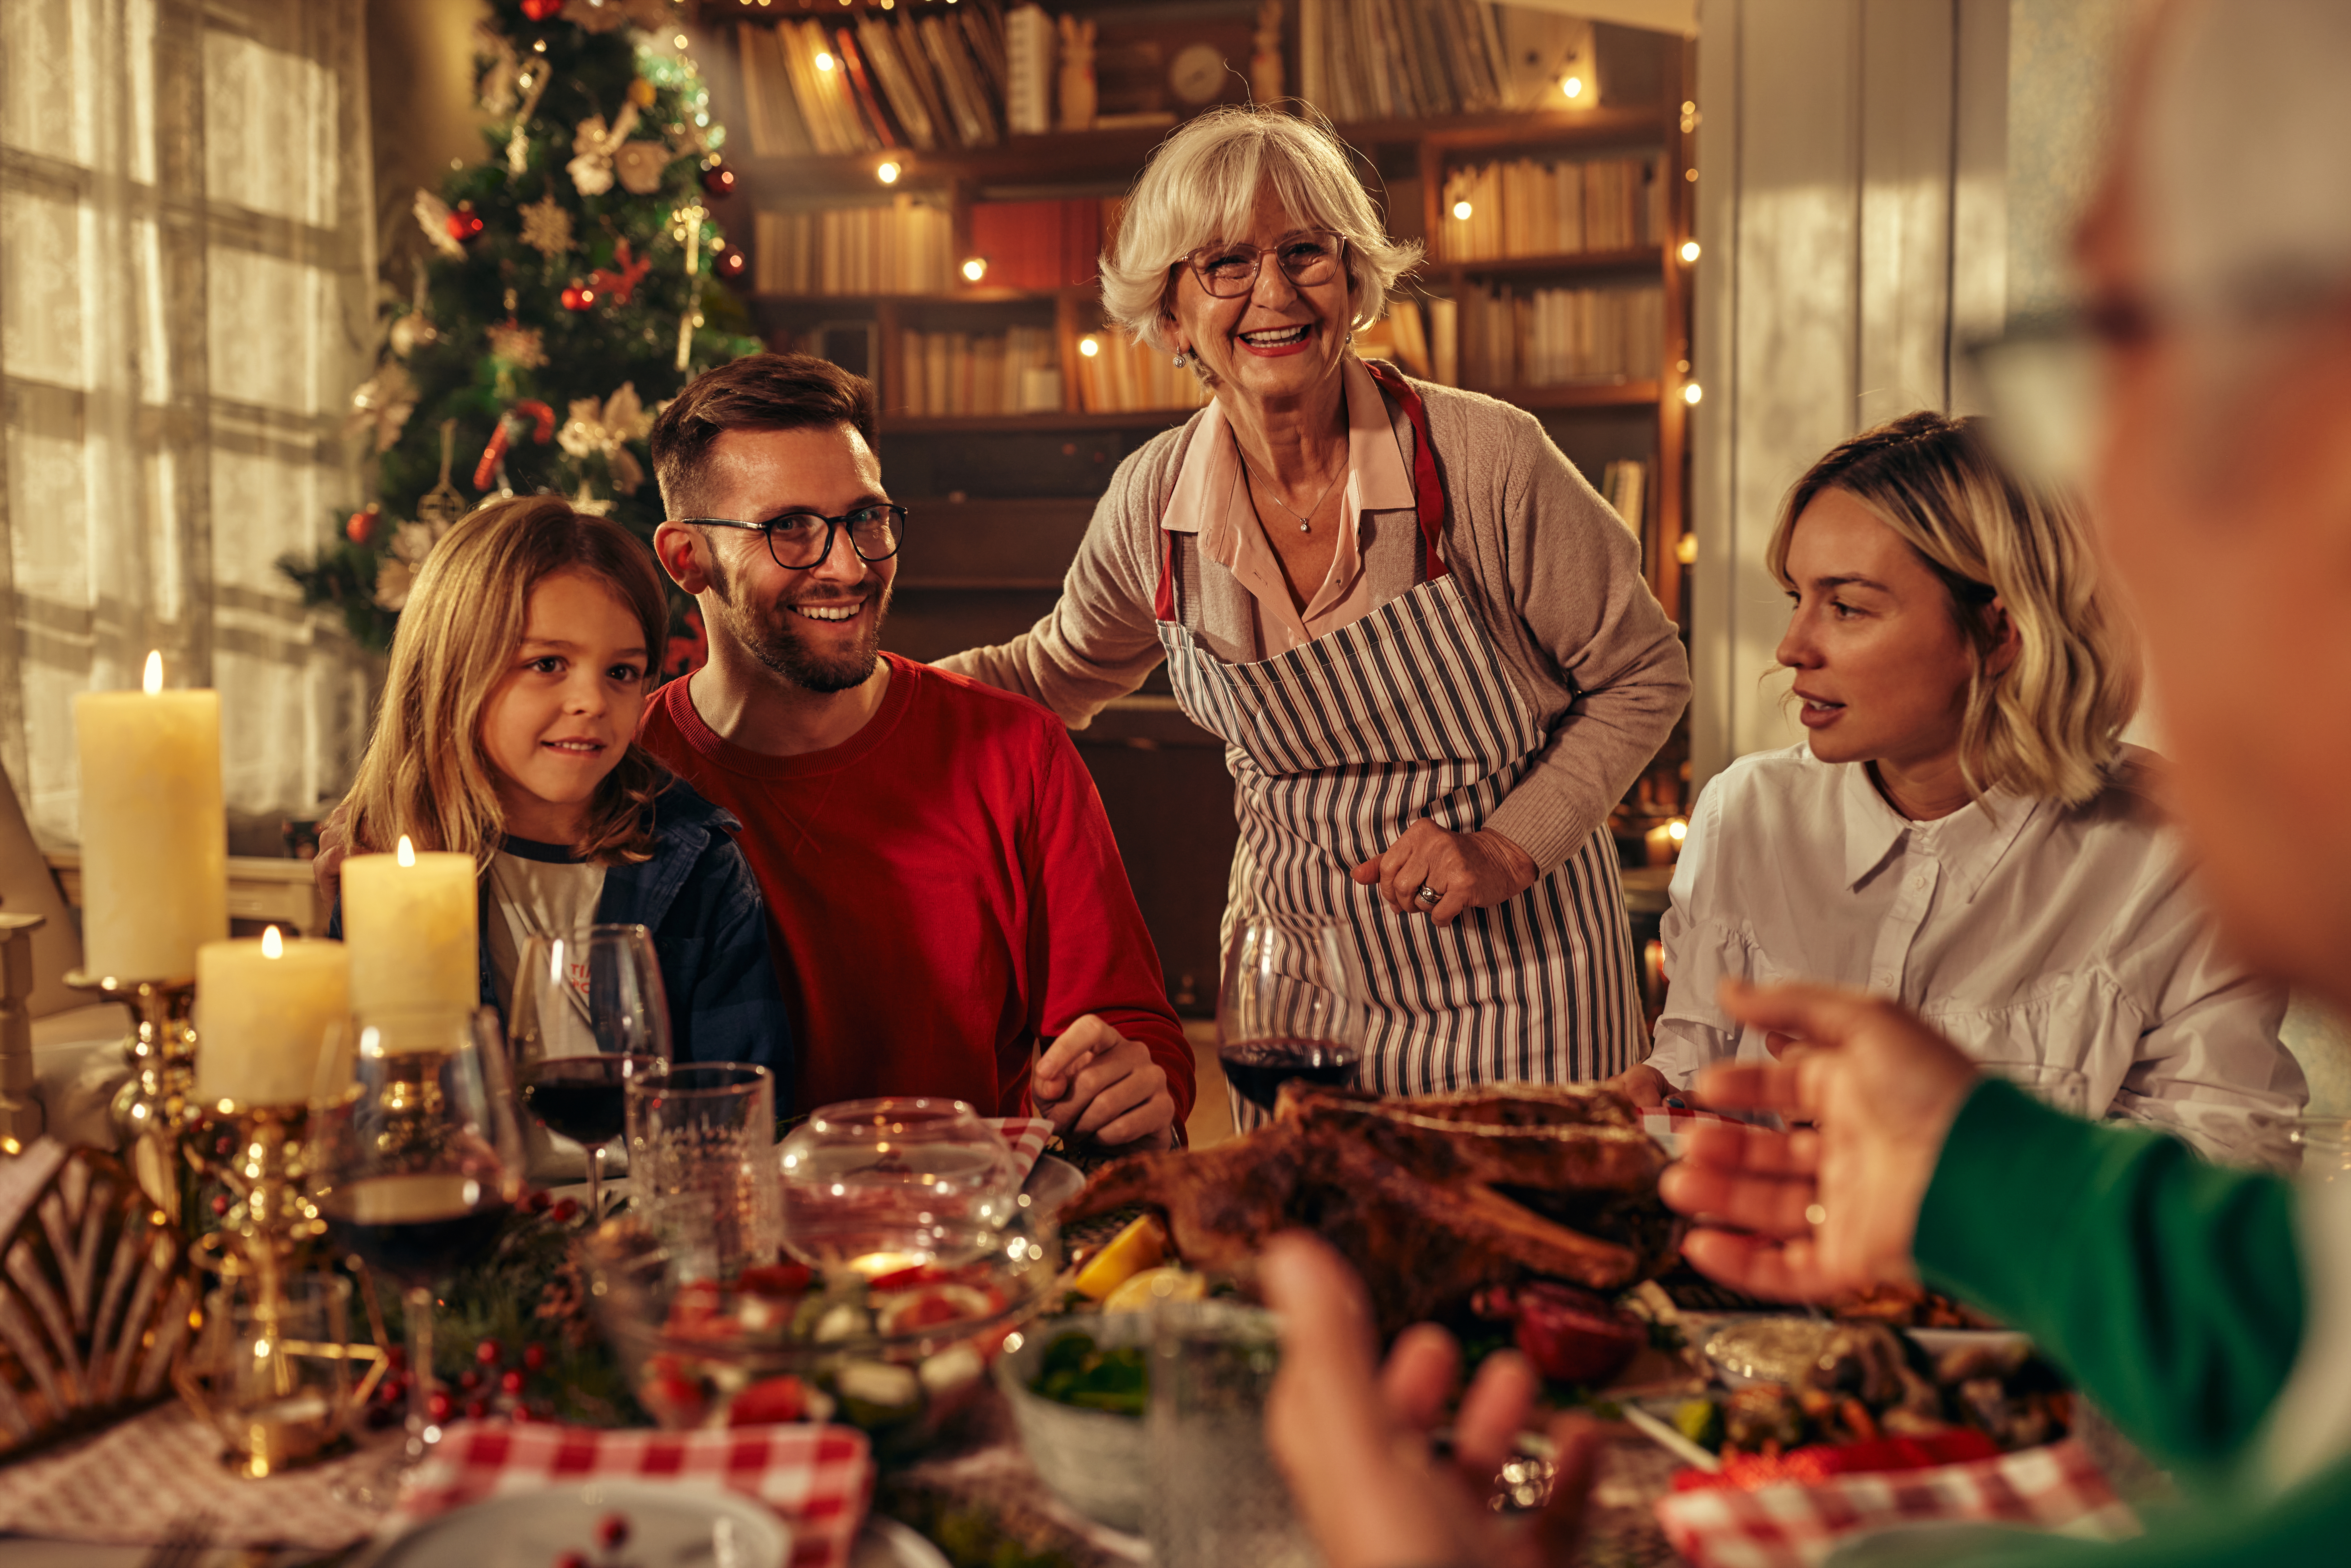 Les membres de la famille réunis lors d'un souper de Noël | Source : Shutterstock